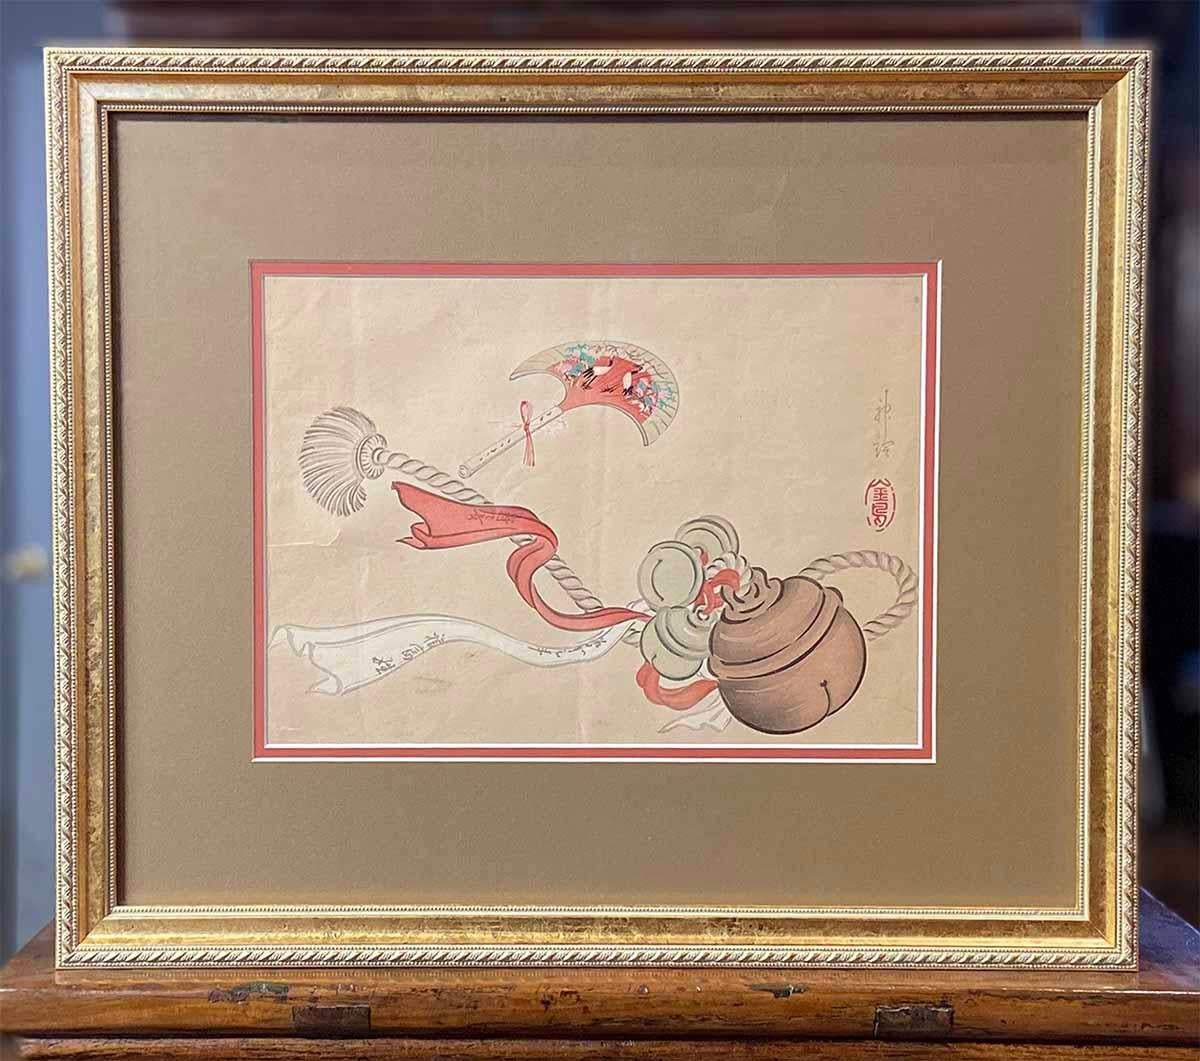 Une ancienne gravure sur bois japonaise du 19e siècle représentant un gland de cérémonie. Créée au Japon au cours du XIXe siècle, cette gravure sur bois attire notre attention par sa représentation d'objets cérémoniels : un gland à clochettes